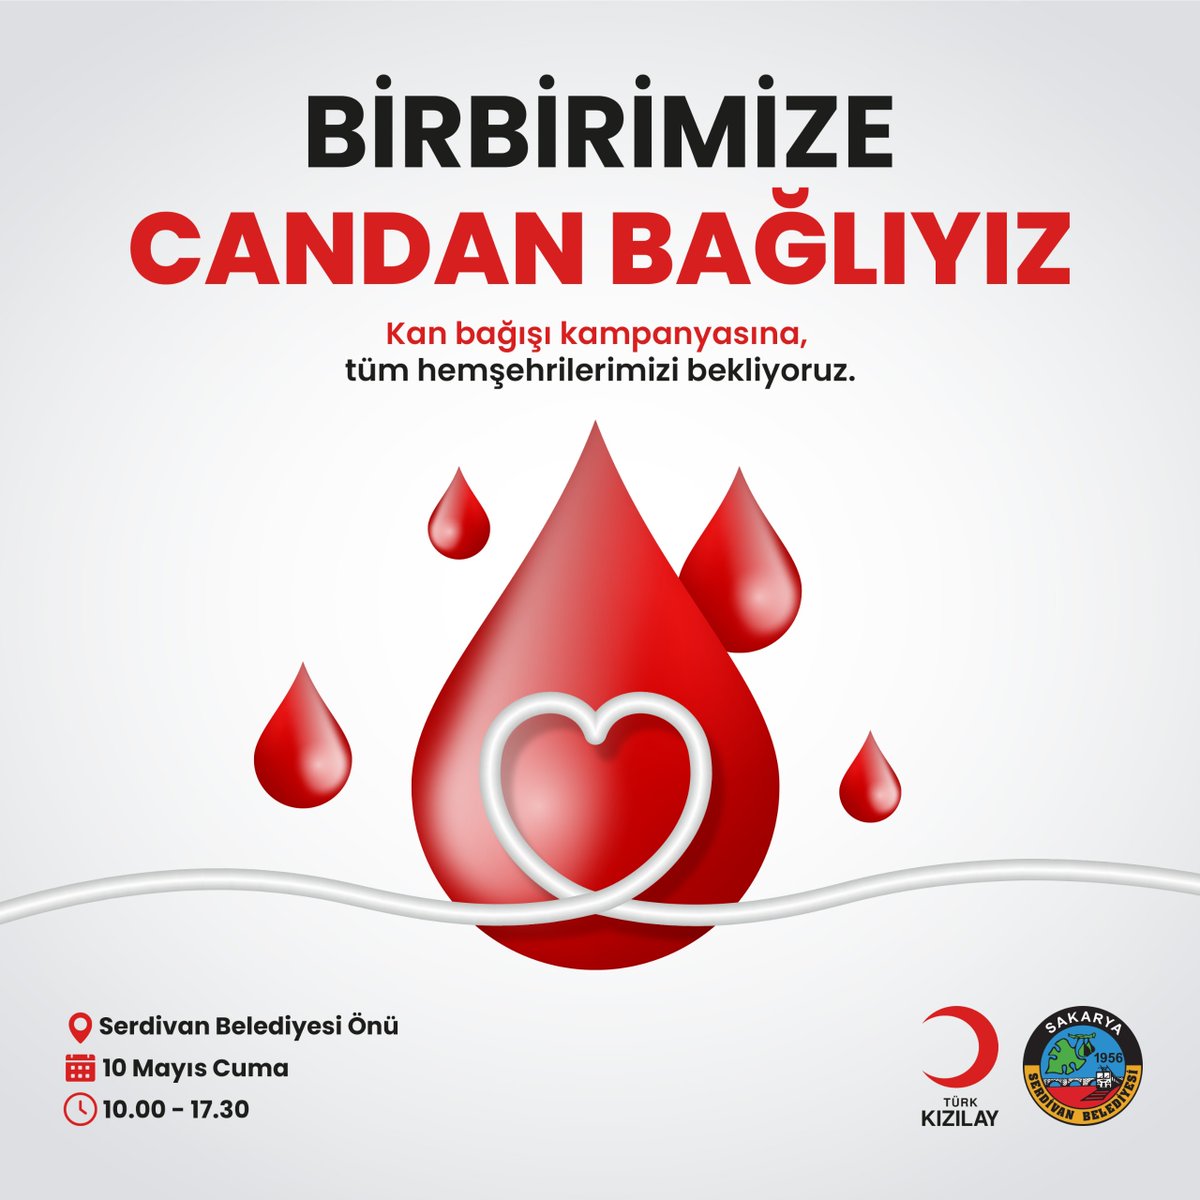 10 Mayıs Cuma (Yarın) Saat 10:00 - 17:30 arasında Serdivan Belediyesi önünde gerçekleştireceğimiz kan bağışı kampanyasına, kan bağışında bulunmak isteyen duyarlı hemşehrilerimizi bekliyoruz. Çünkü biz; birbirimize candan bağlıyız...